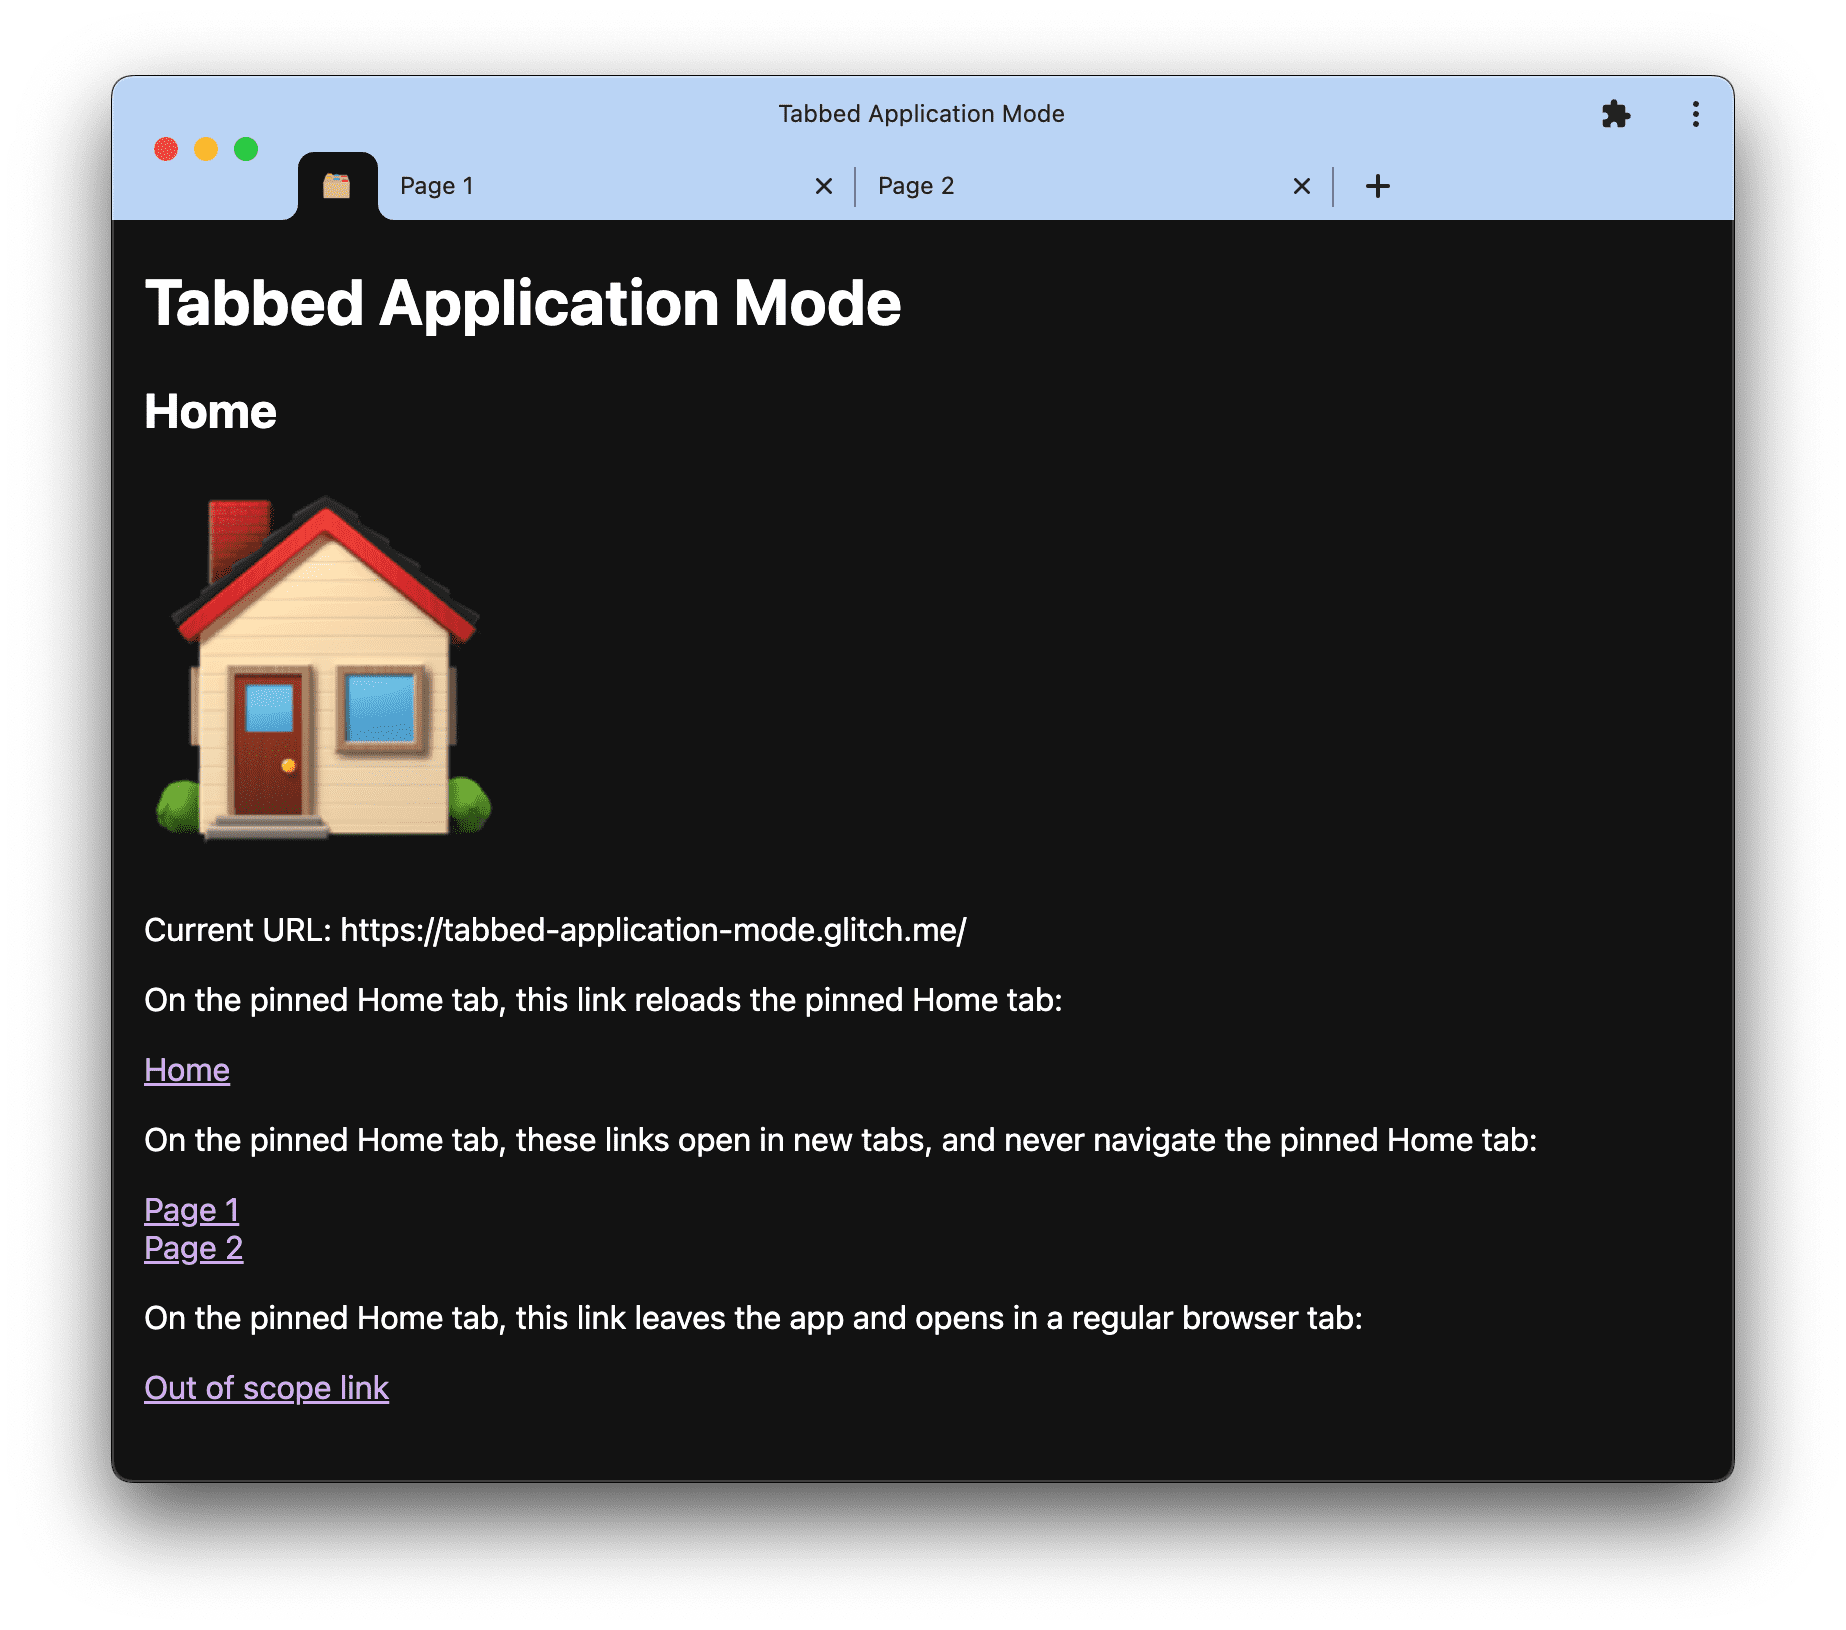 Tabbed-application-mode.glitch.me पर टैब किए गए ऐप्लिकेशन मोड के डेमो का स्क्रीनशॉट.